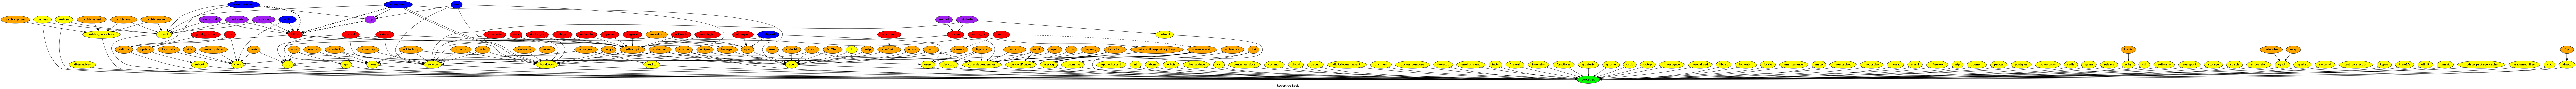 Overview of dependencies